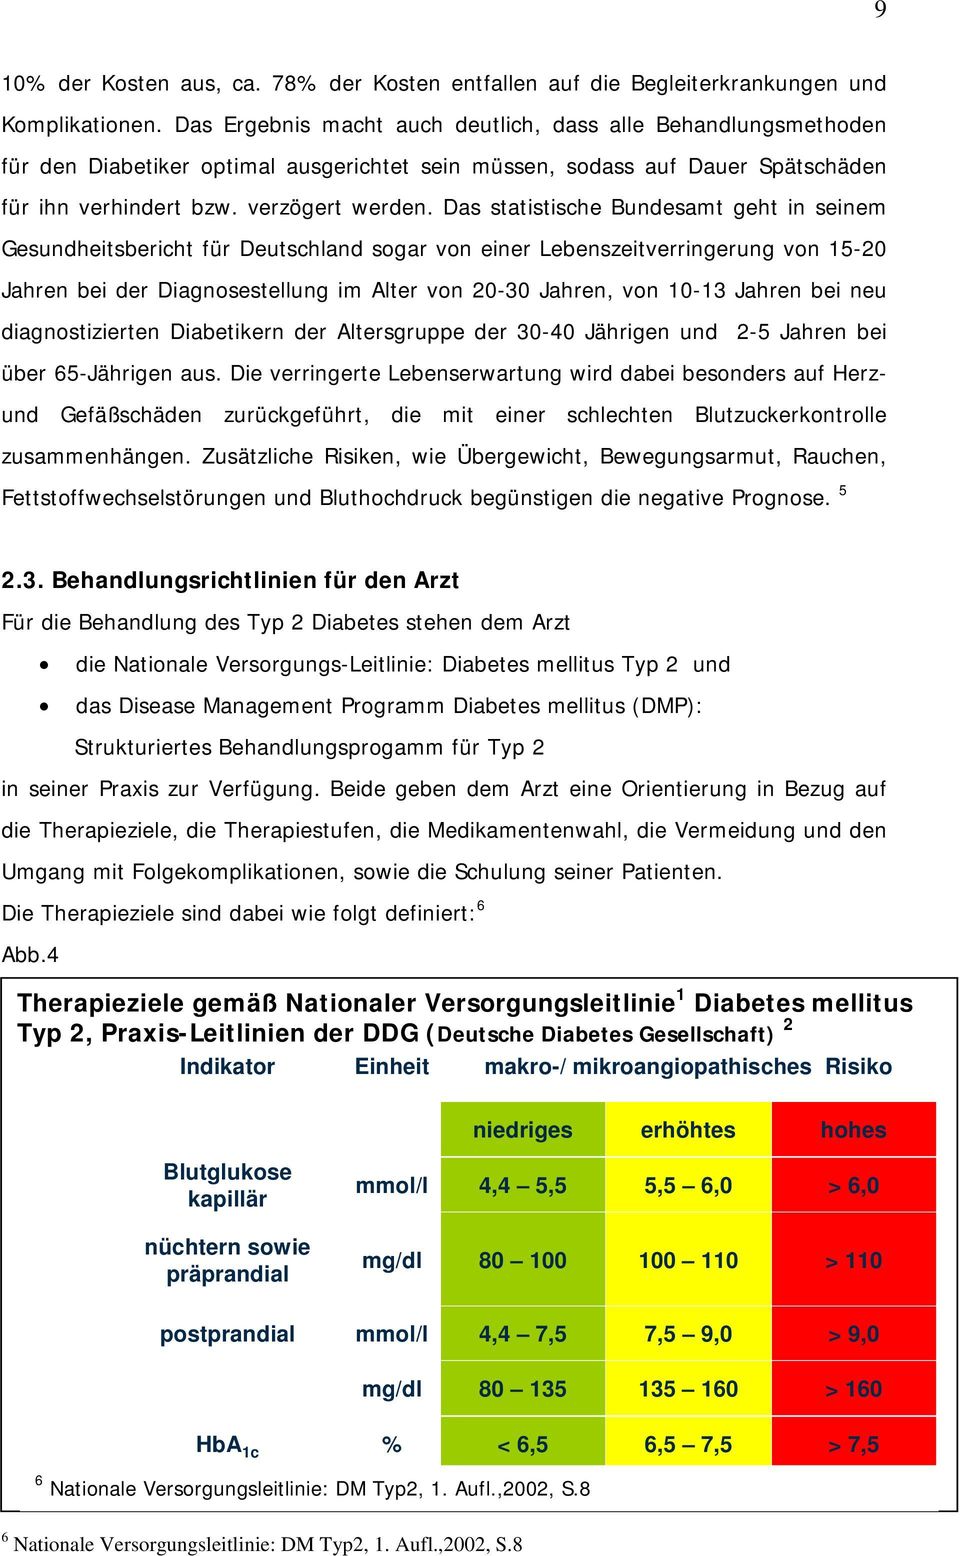 Das statistische Bundesamt geht in seinem Gesundheitsbericht für Deutschland sogar von einer Lebenszeitverringerung von 15-20 Jahren bei der Diagnosestellung im Alter von 20-30 Jahren, von 10-13